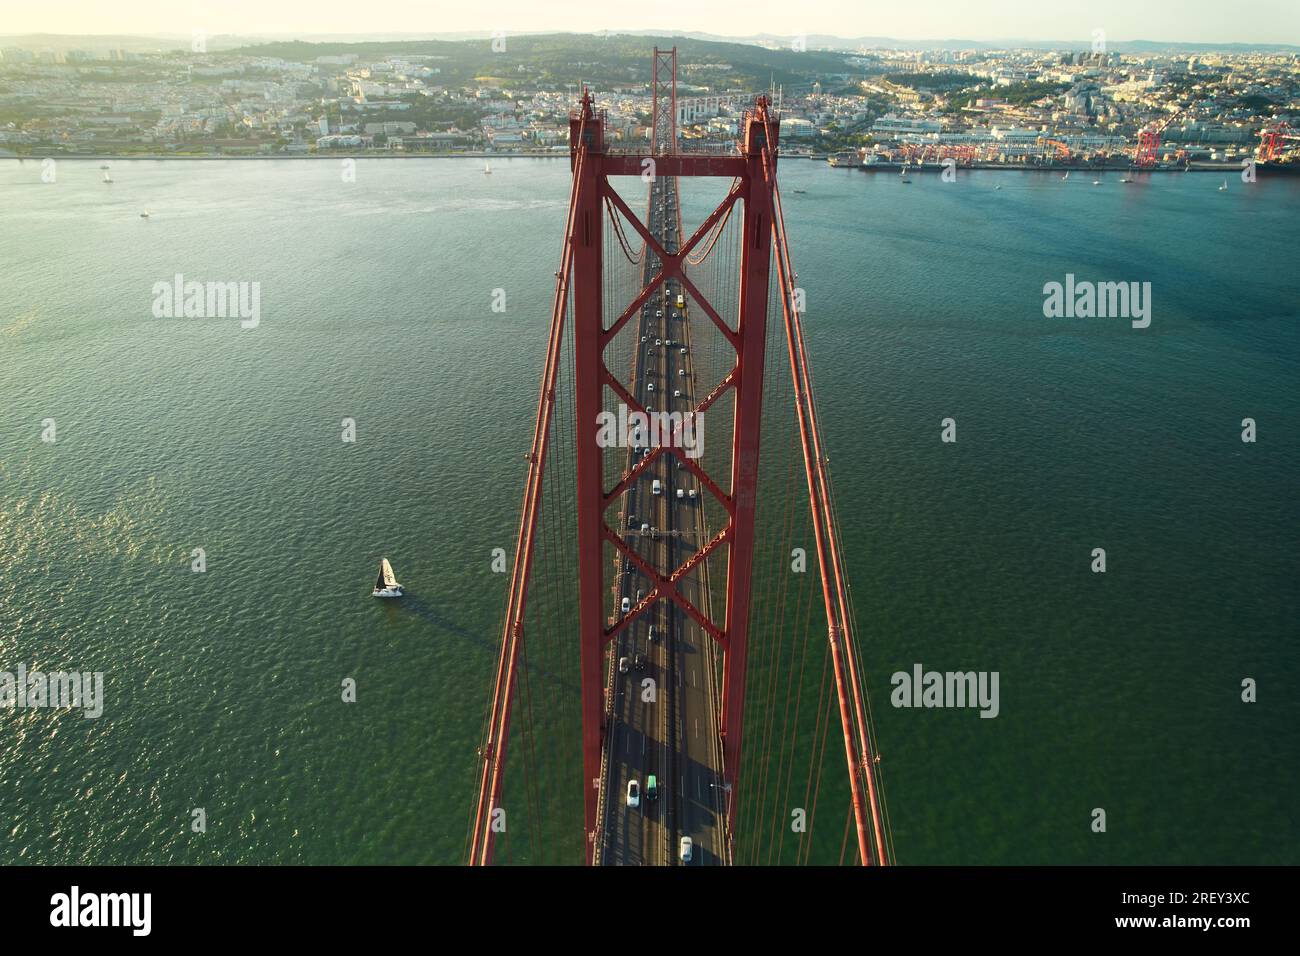 Luftaufnahme der Brücke 25 de Abril, die den Fluss Tejo überquert, ist eine Hängebrücke, die die Stadt Lissabon und Almada verbindet. Sonniger Sommertag. Portugal Stockfoto